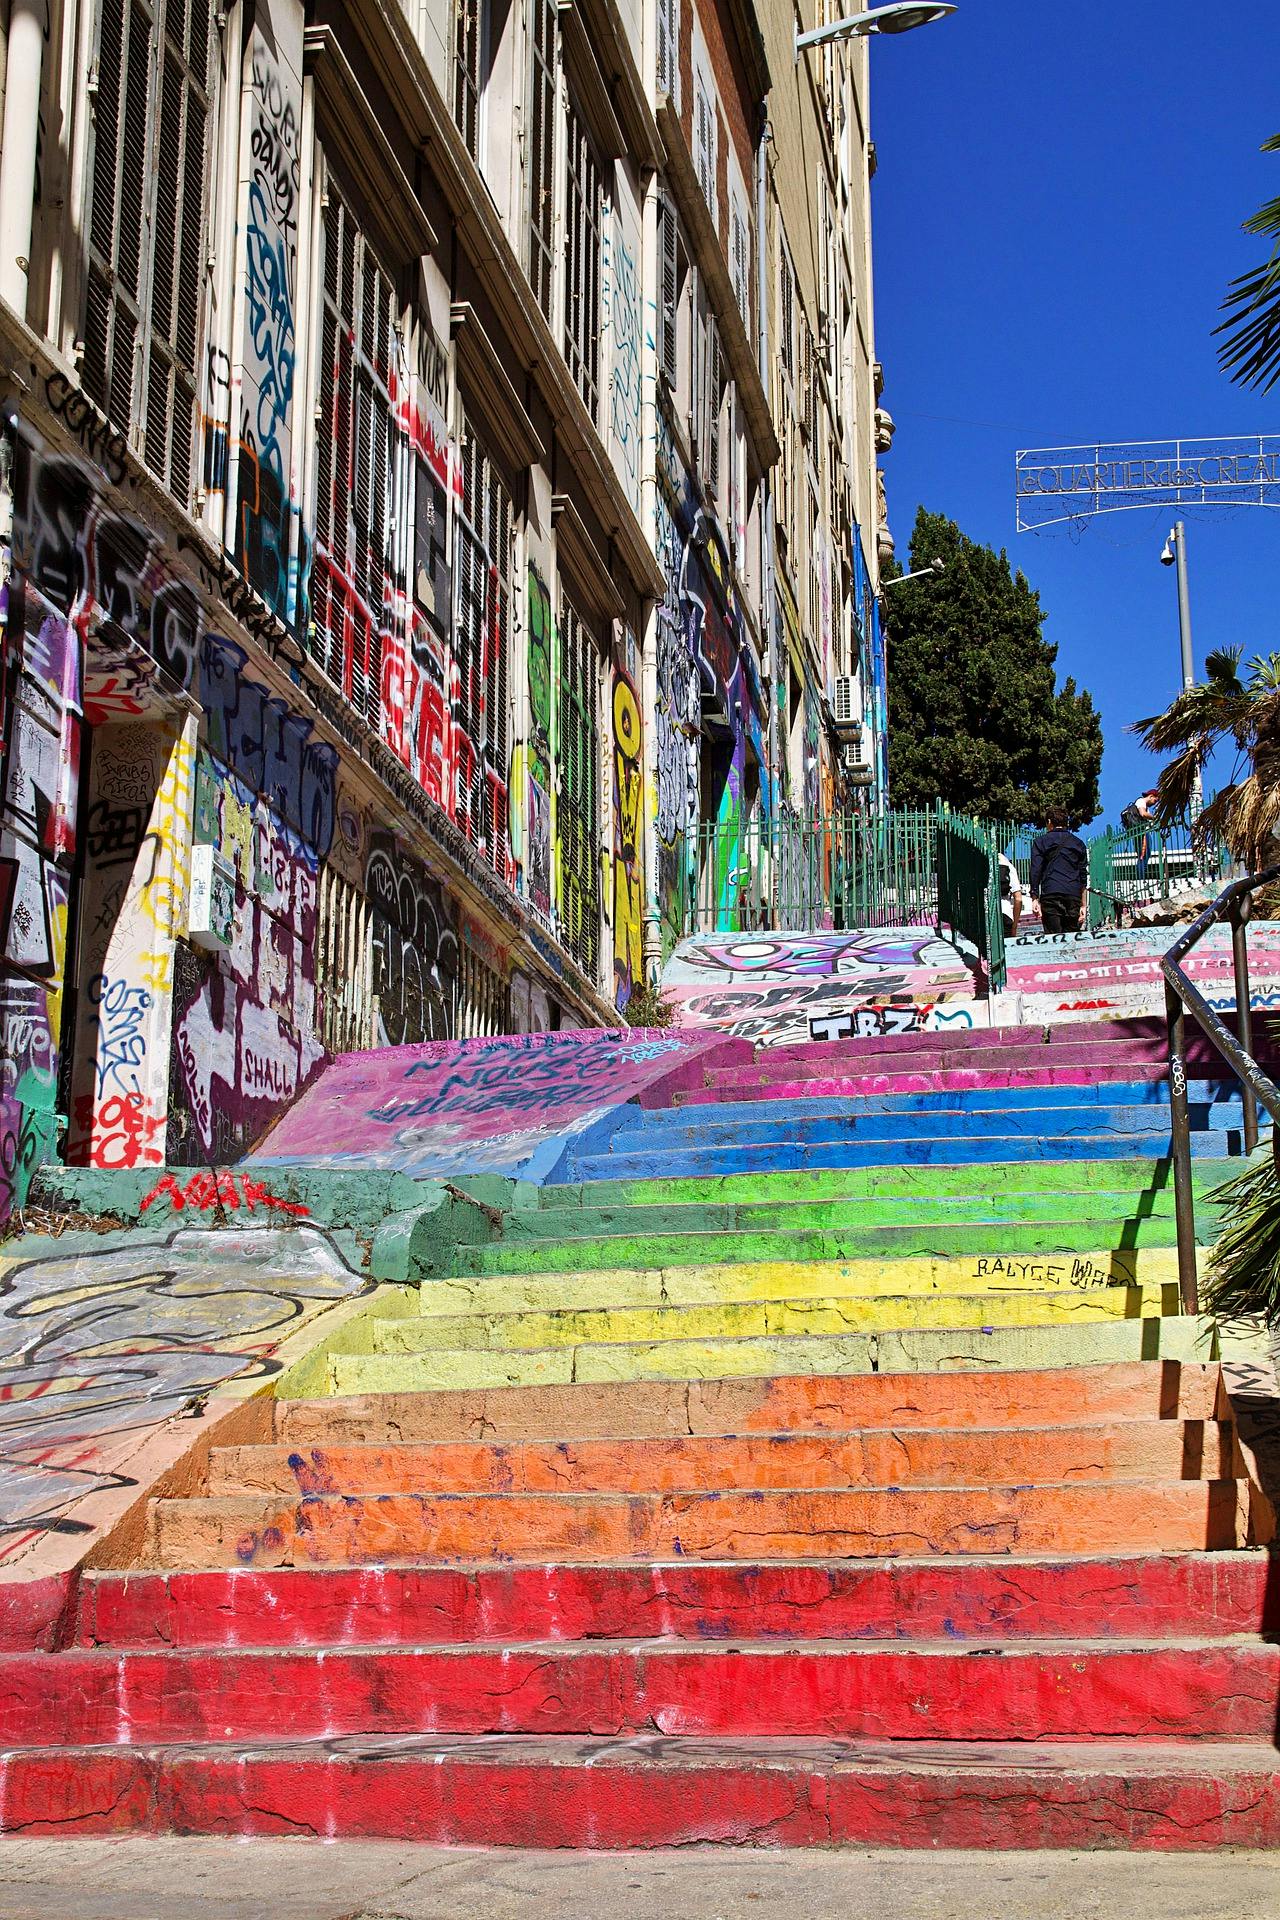 L'escalier arc-en-ciel menant à cours Julien, emblématique de Marseille